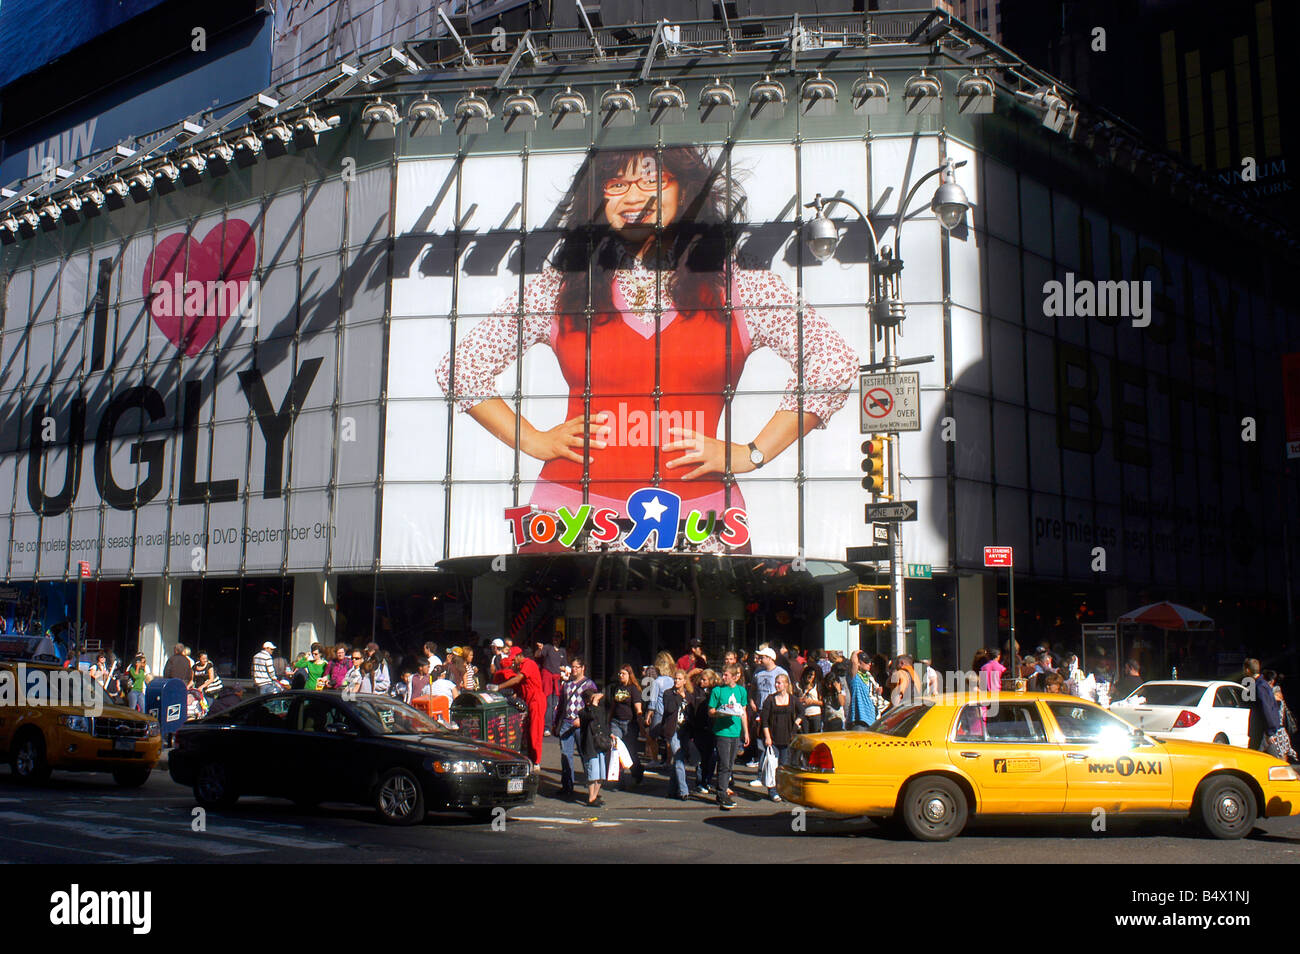 La publicité pour le programme de télévision ABC Ugly Betty s'affiche sur un panneau sur le magasin Toys R Us de Times Square Banque D'Images